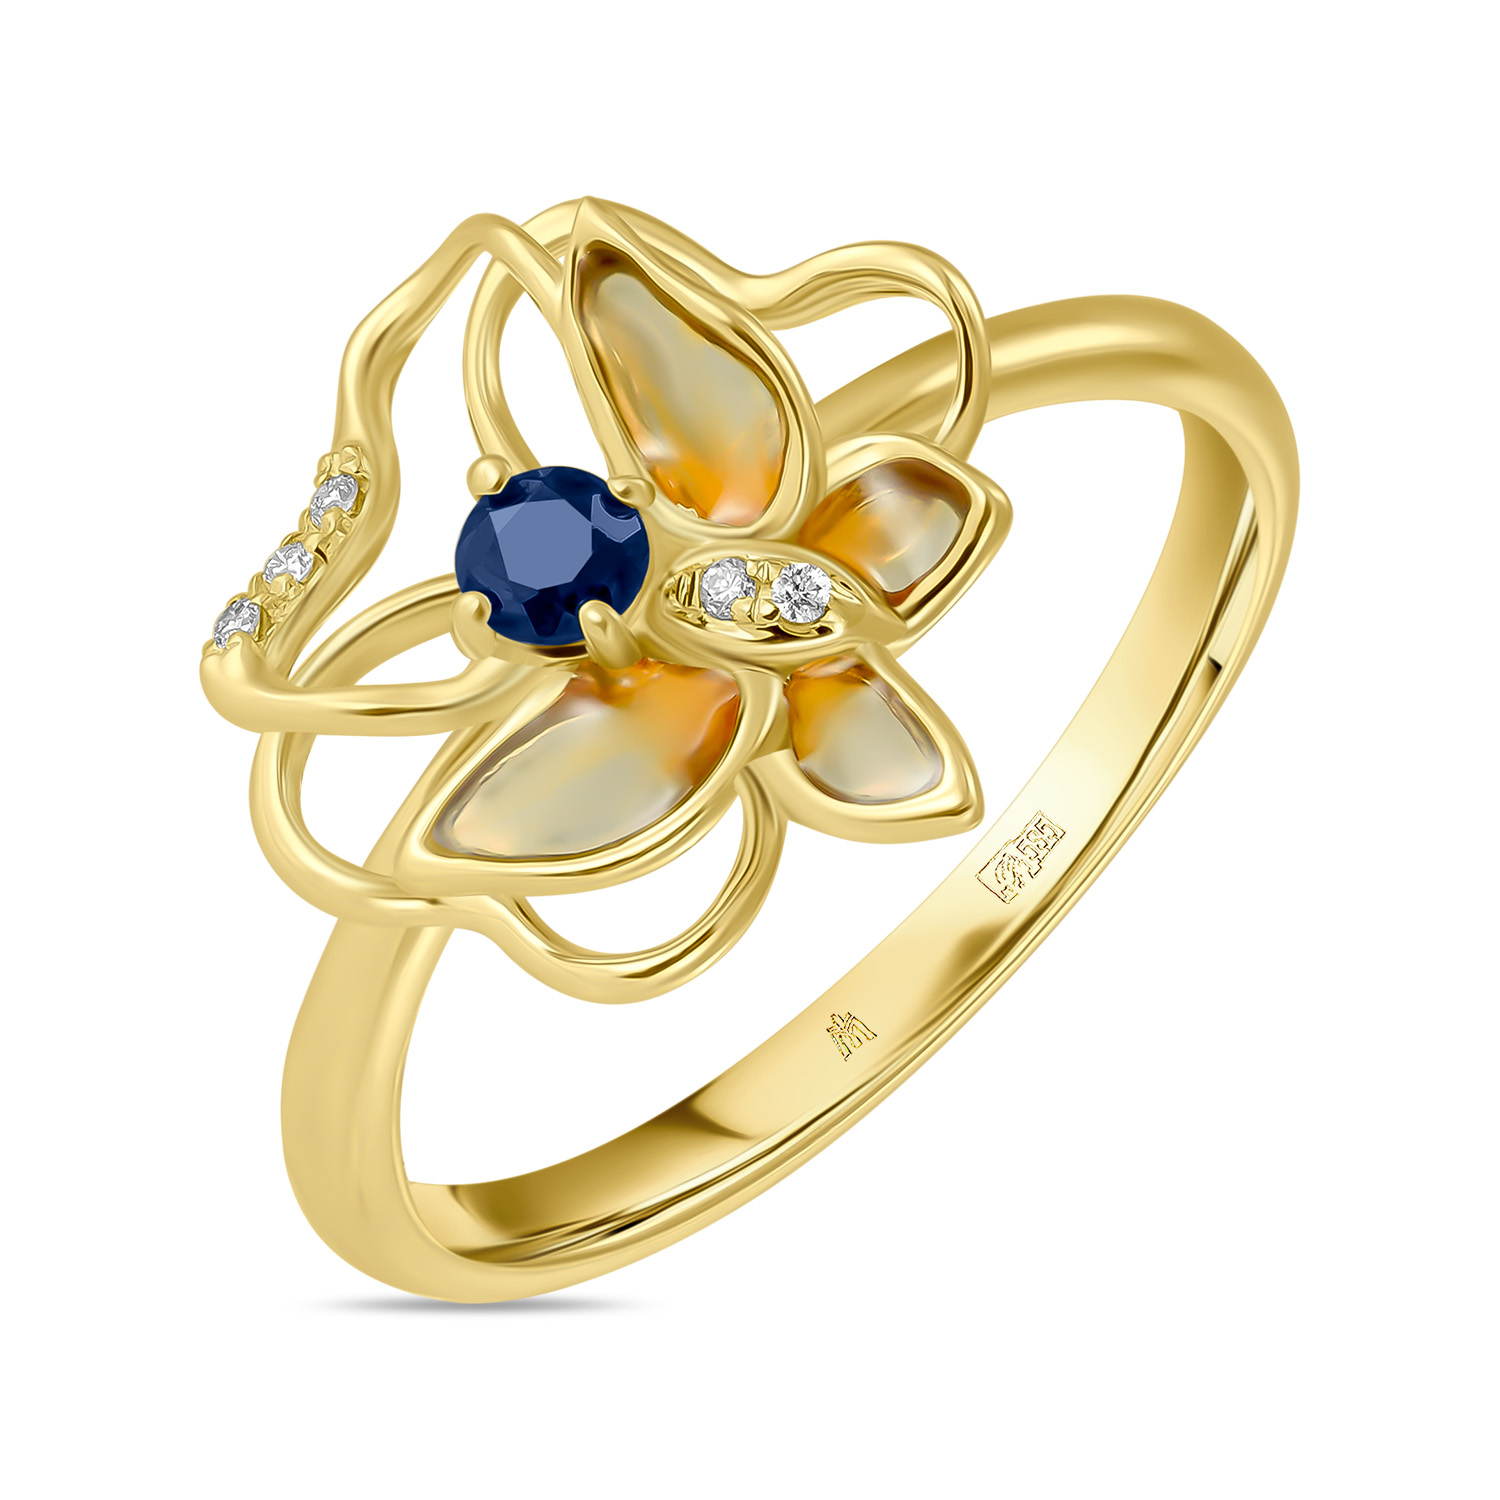 Кольца МЮЗ Золотое кольцо с бриллиантами, эмалью и сапфиром